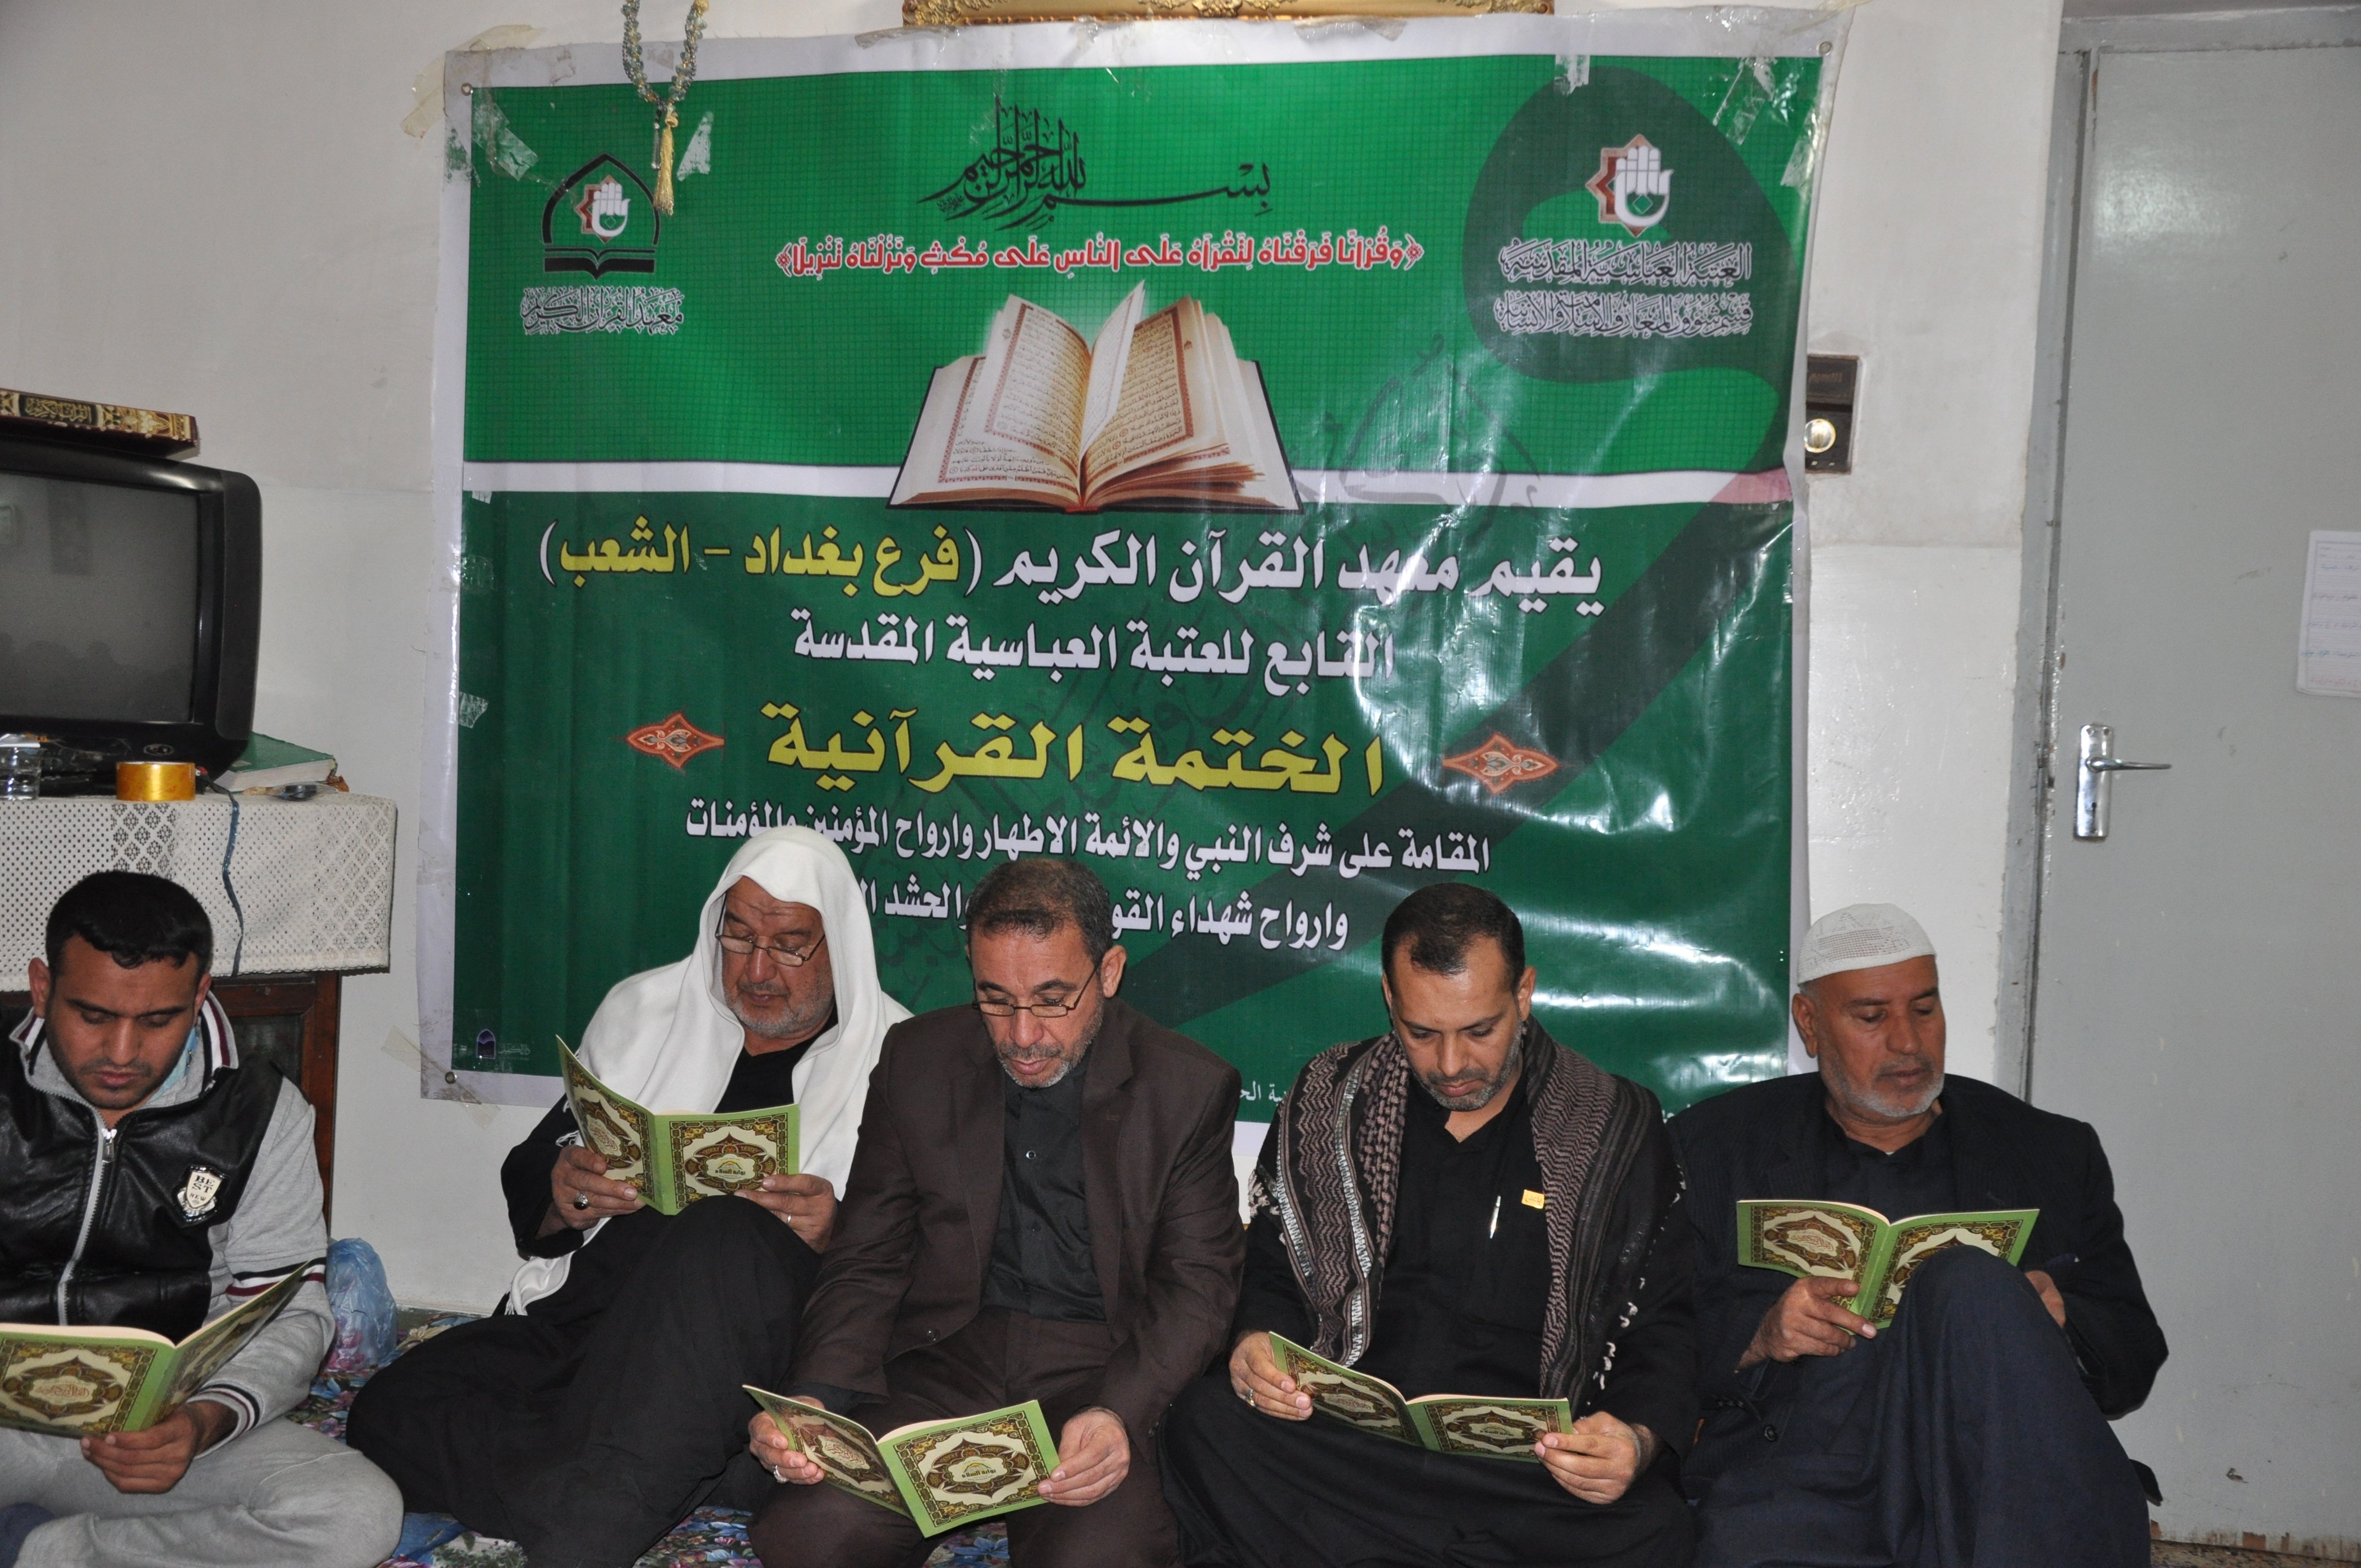 معهد القرآن الكريم فرع بغداد (الشعب) يقيم ختمة قرآنية مباركة يهدى ثوابها للنبي الأكرم (ص)